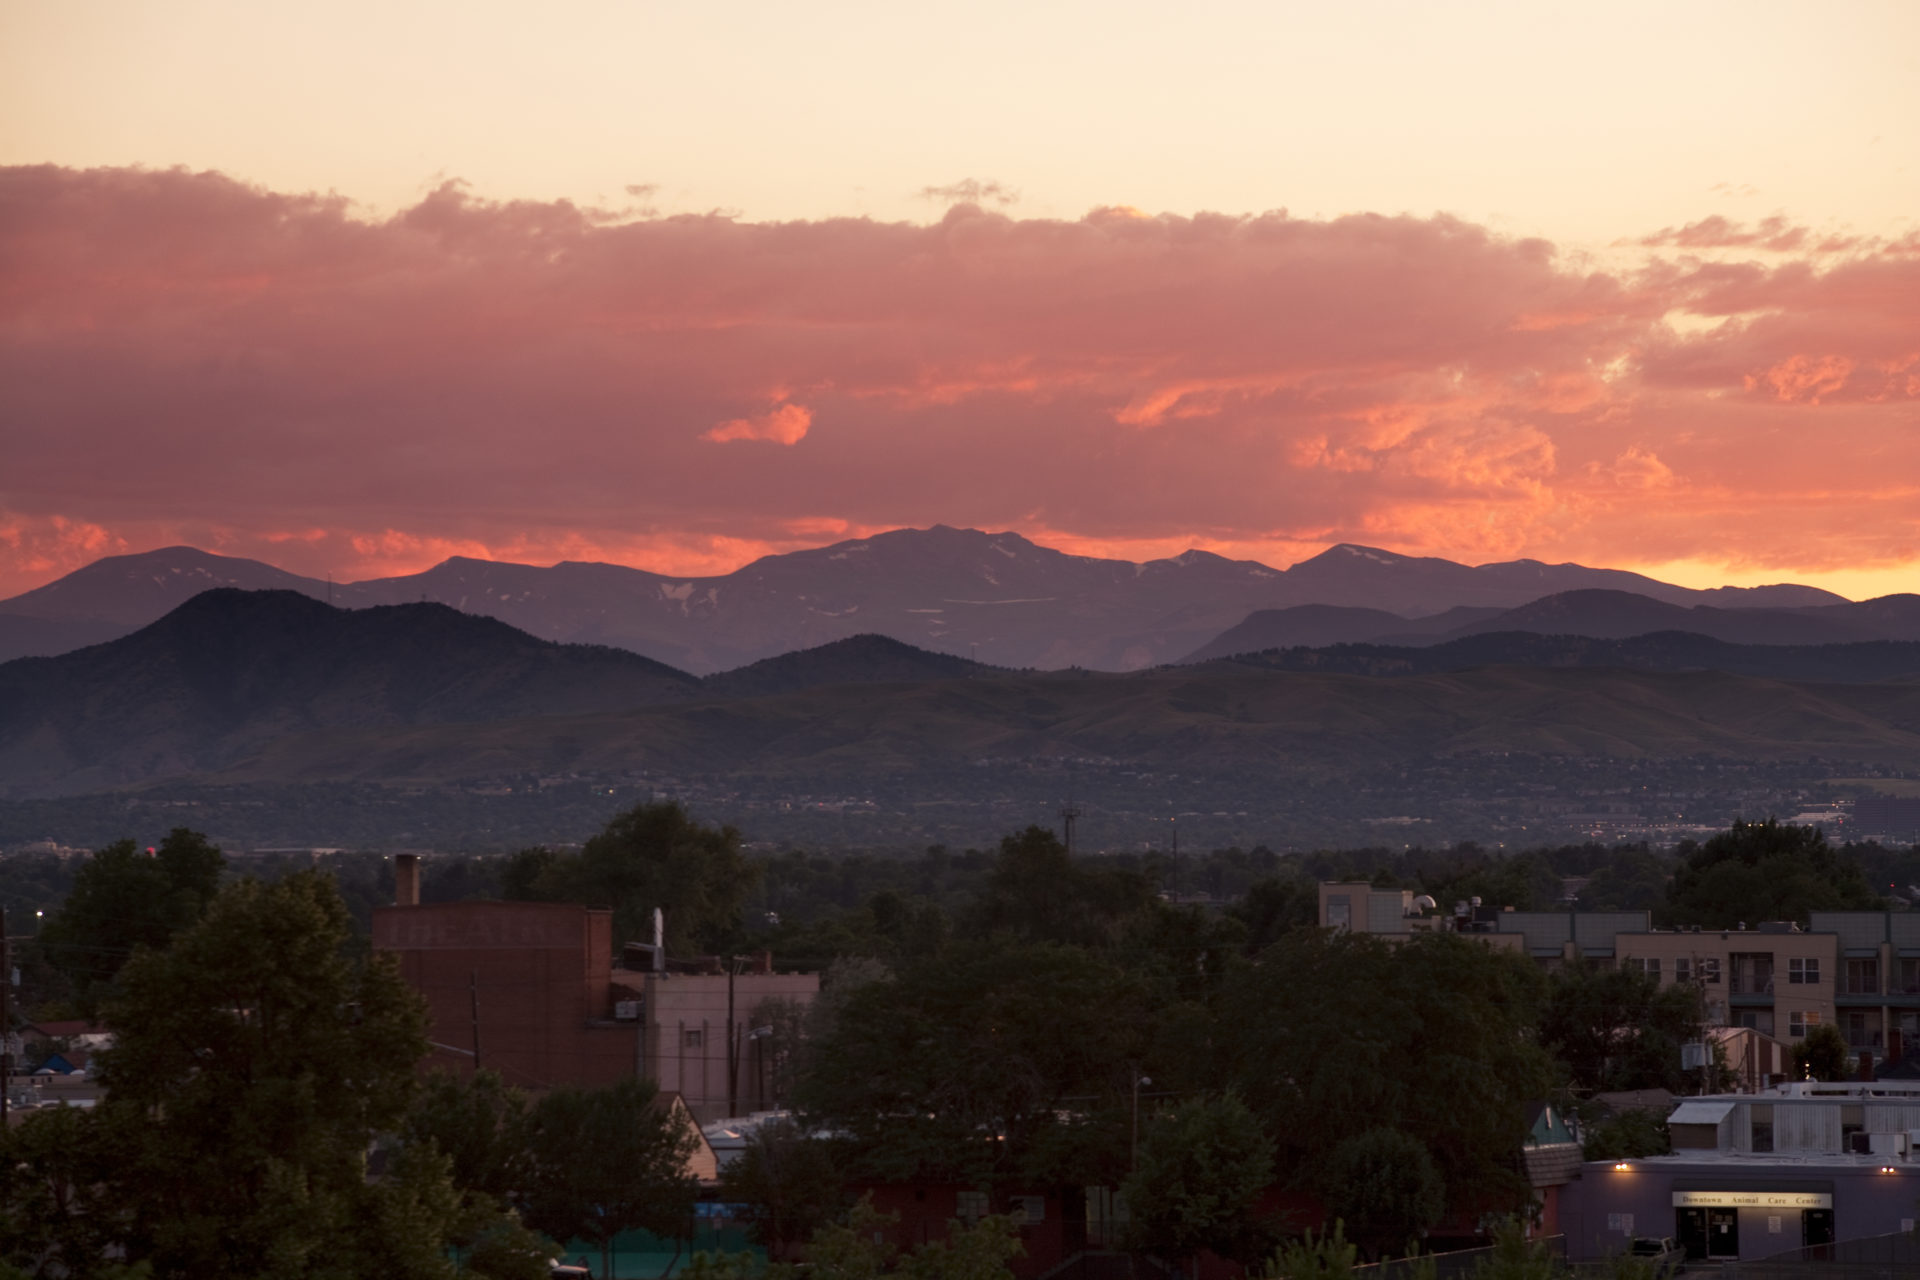 Mount Evans sunset - July 23, 2011